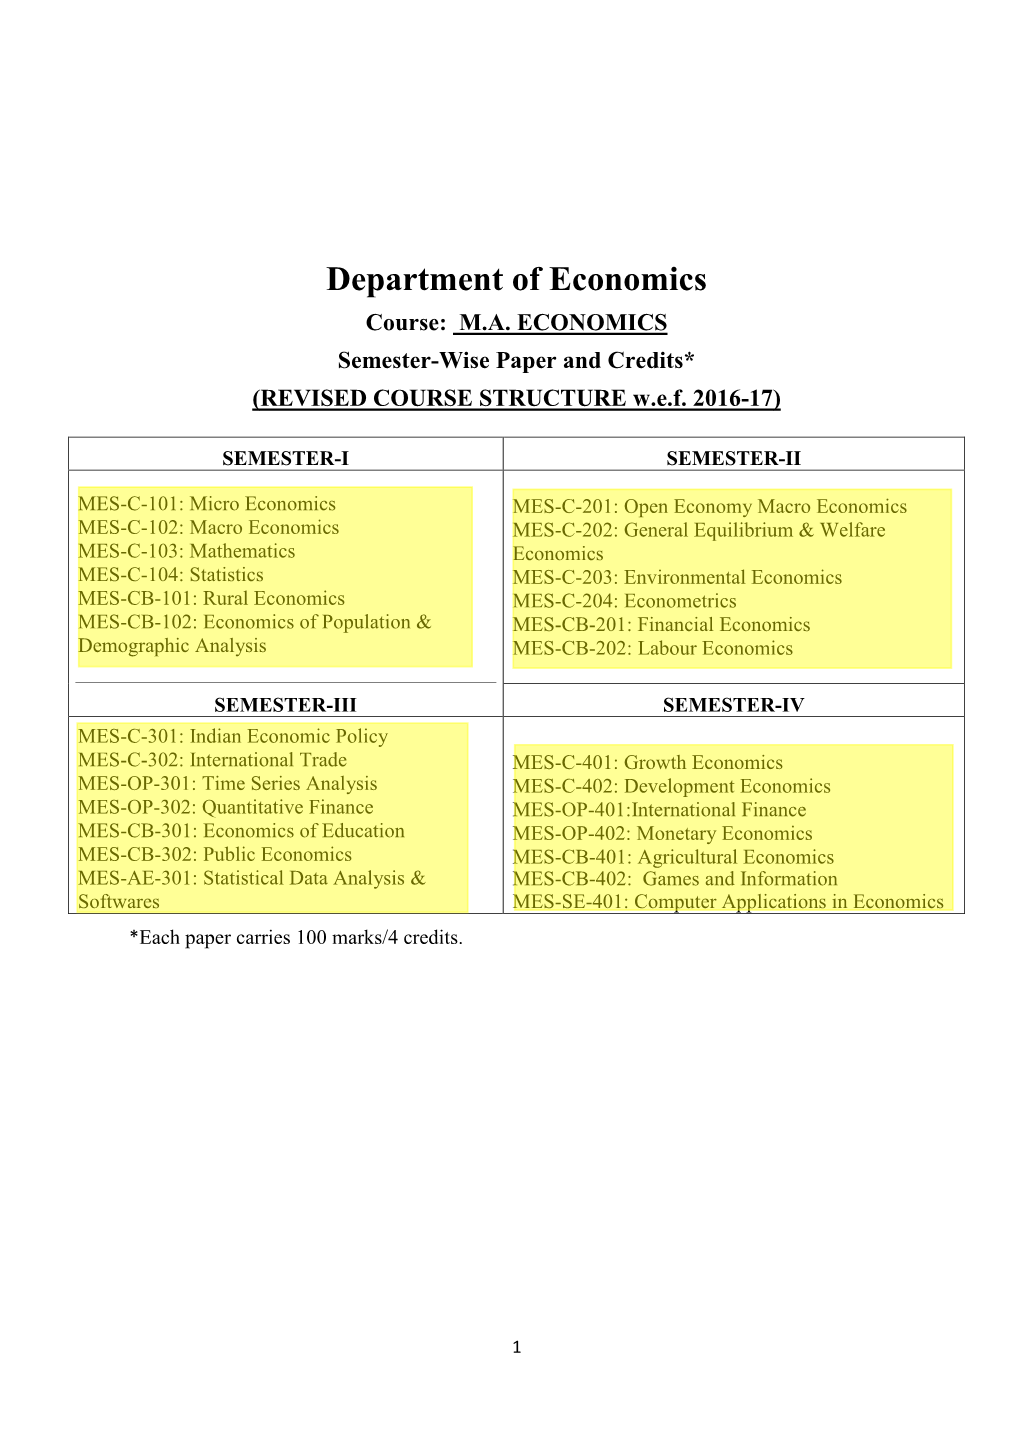 Department of Economics Course: M.A